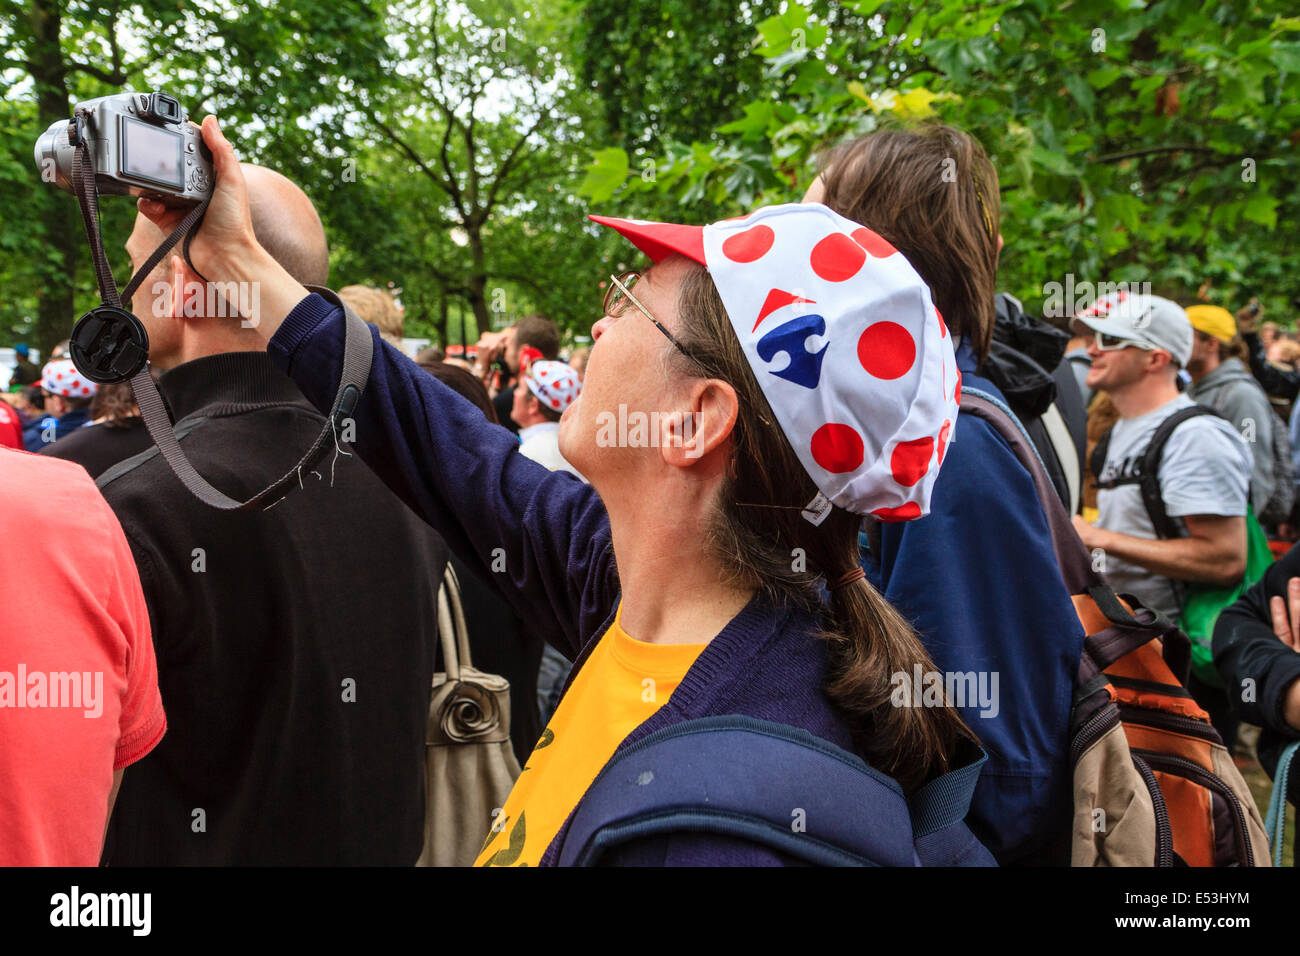 L'action de photographier des spectateurs sur le Tour de France 2014 troisième étape, Londres UK Banque D'Images